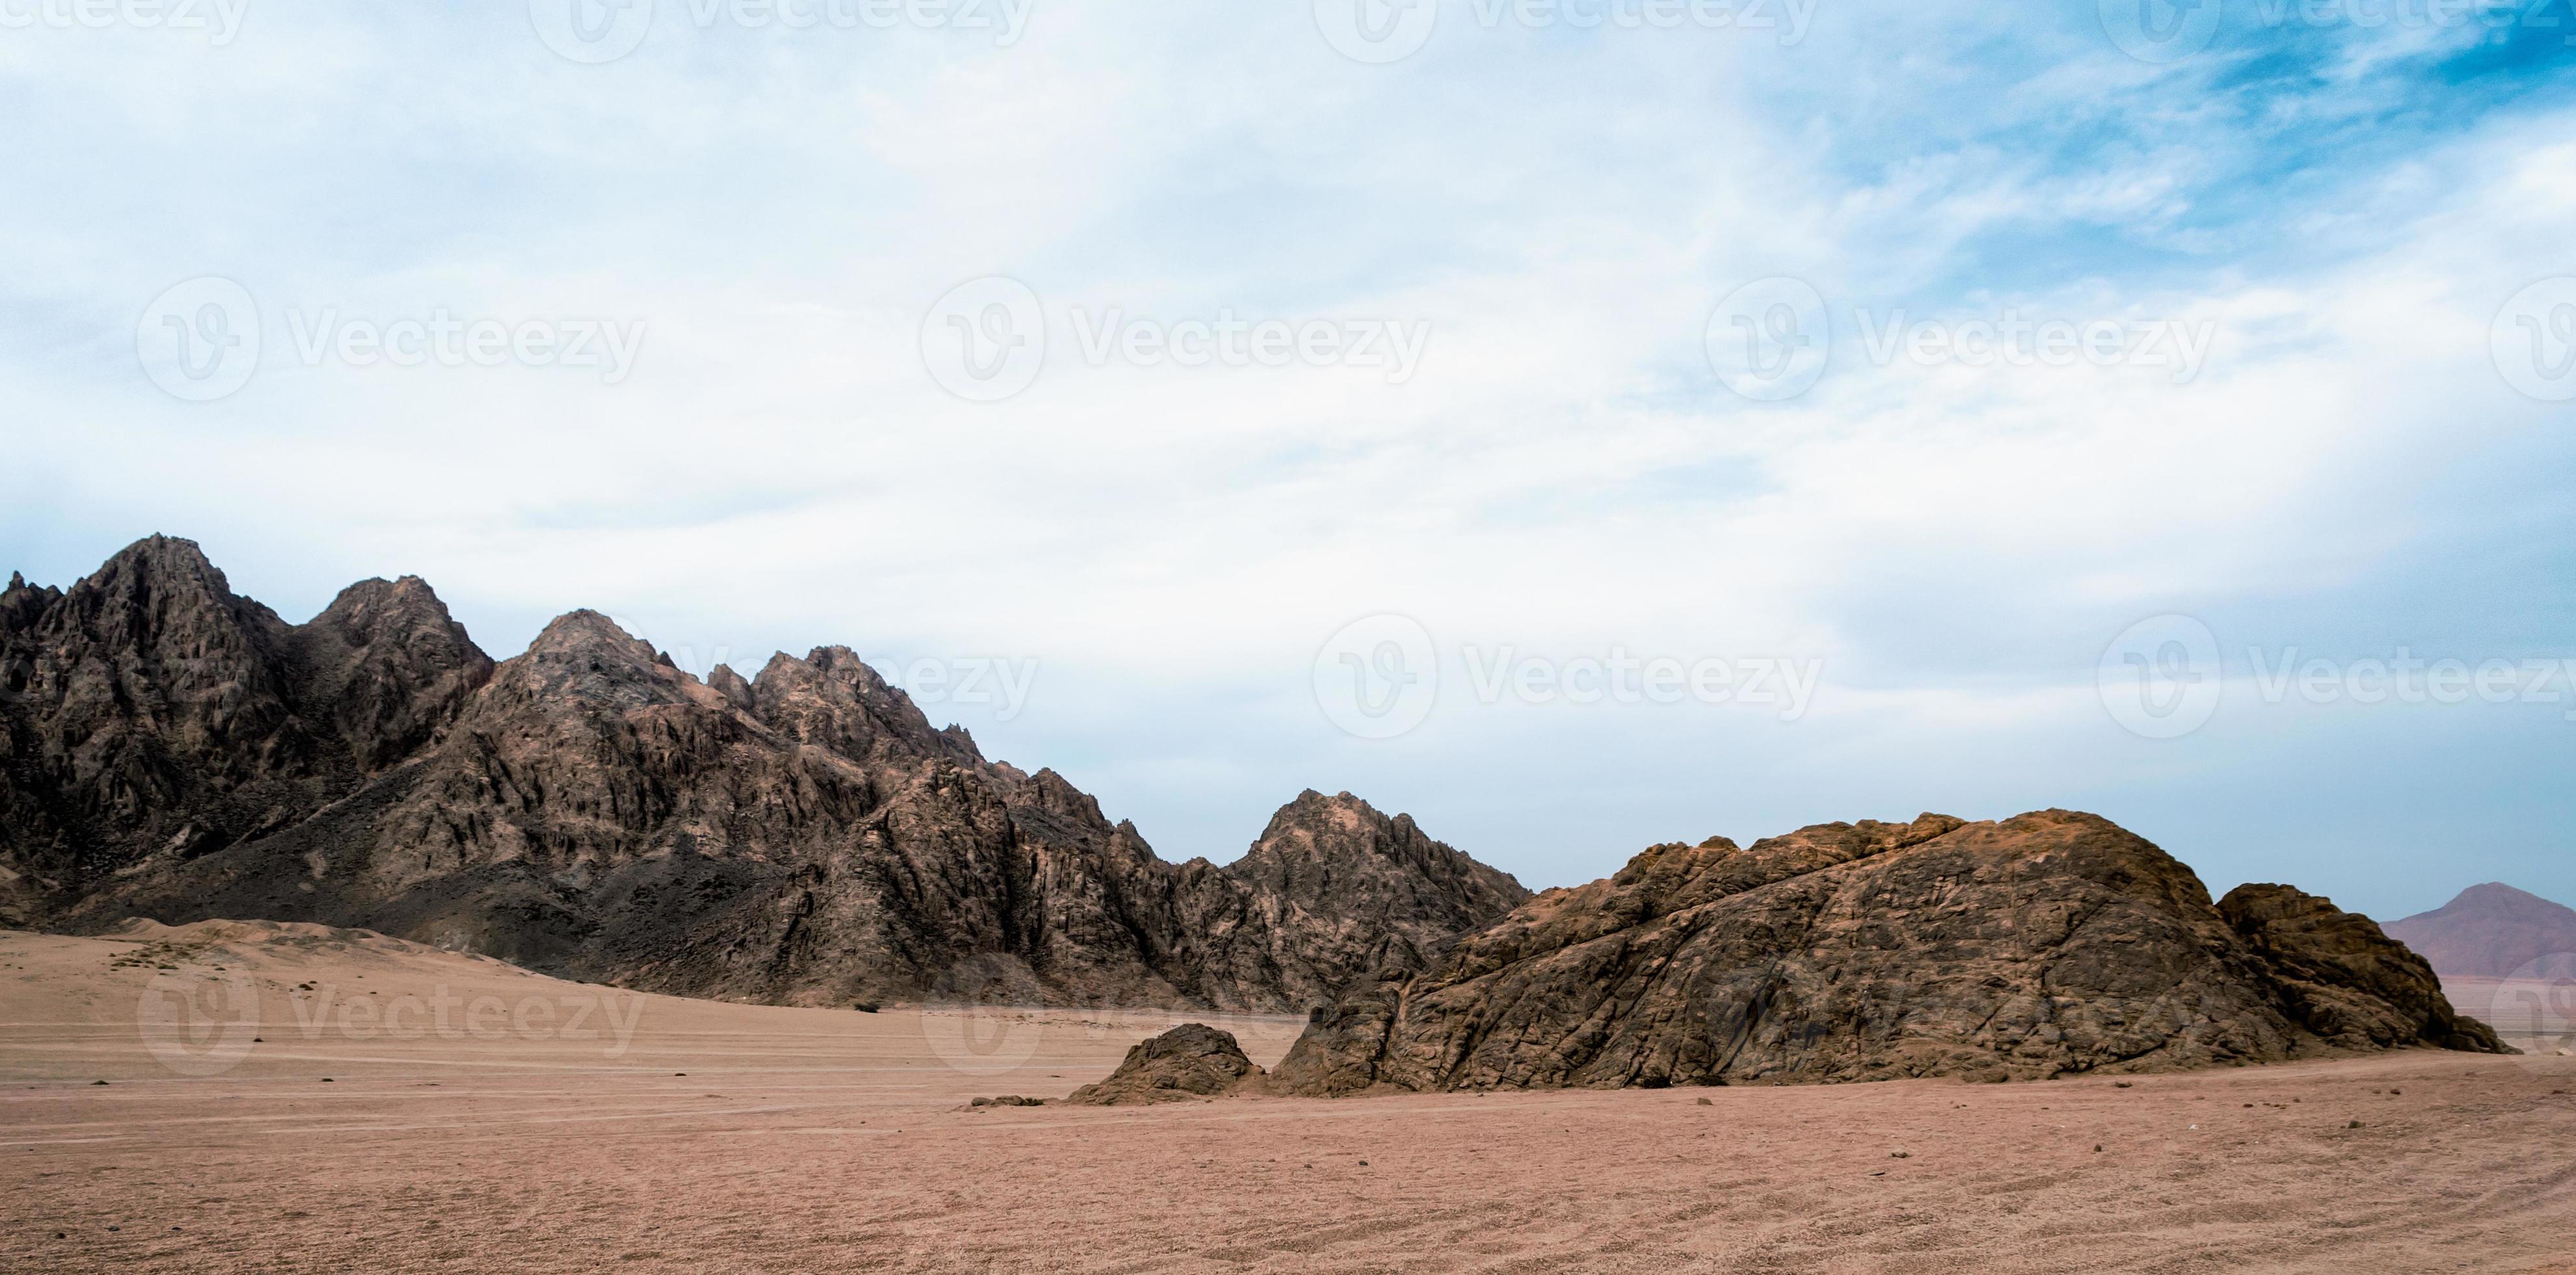 pedras na areia em um deserto foto